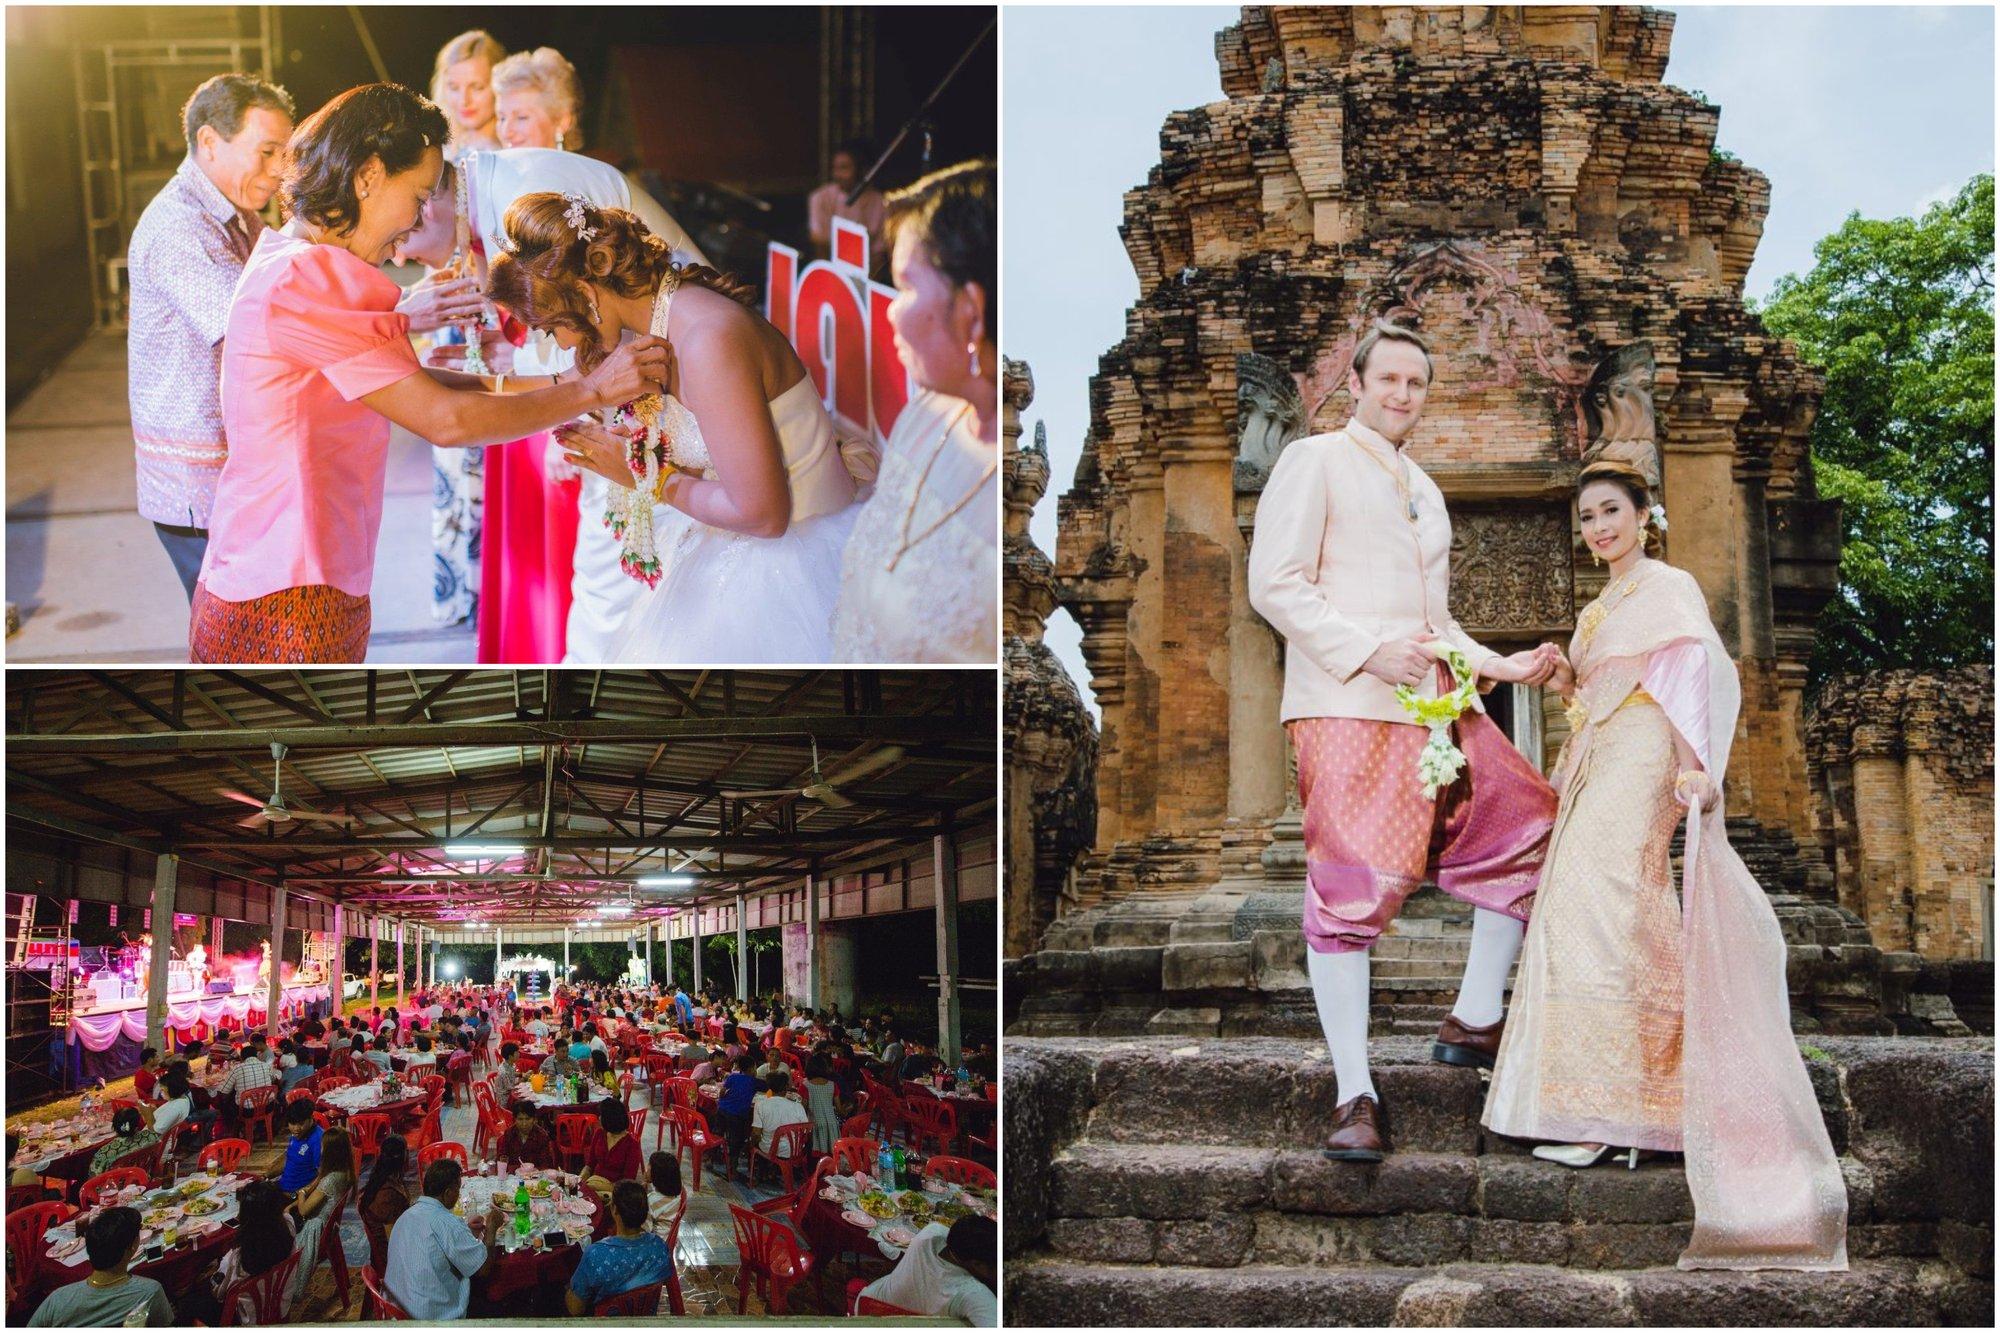 Tailandietę pamilęs Darius iškėlė tikras tradicines vestuves: dalyvavo 500 žmonių, muzika girdėjosi 10 km spinduliu